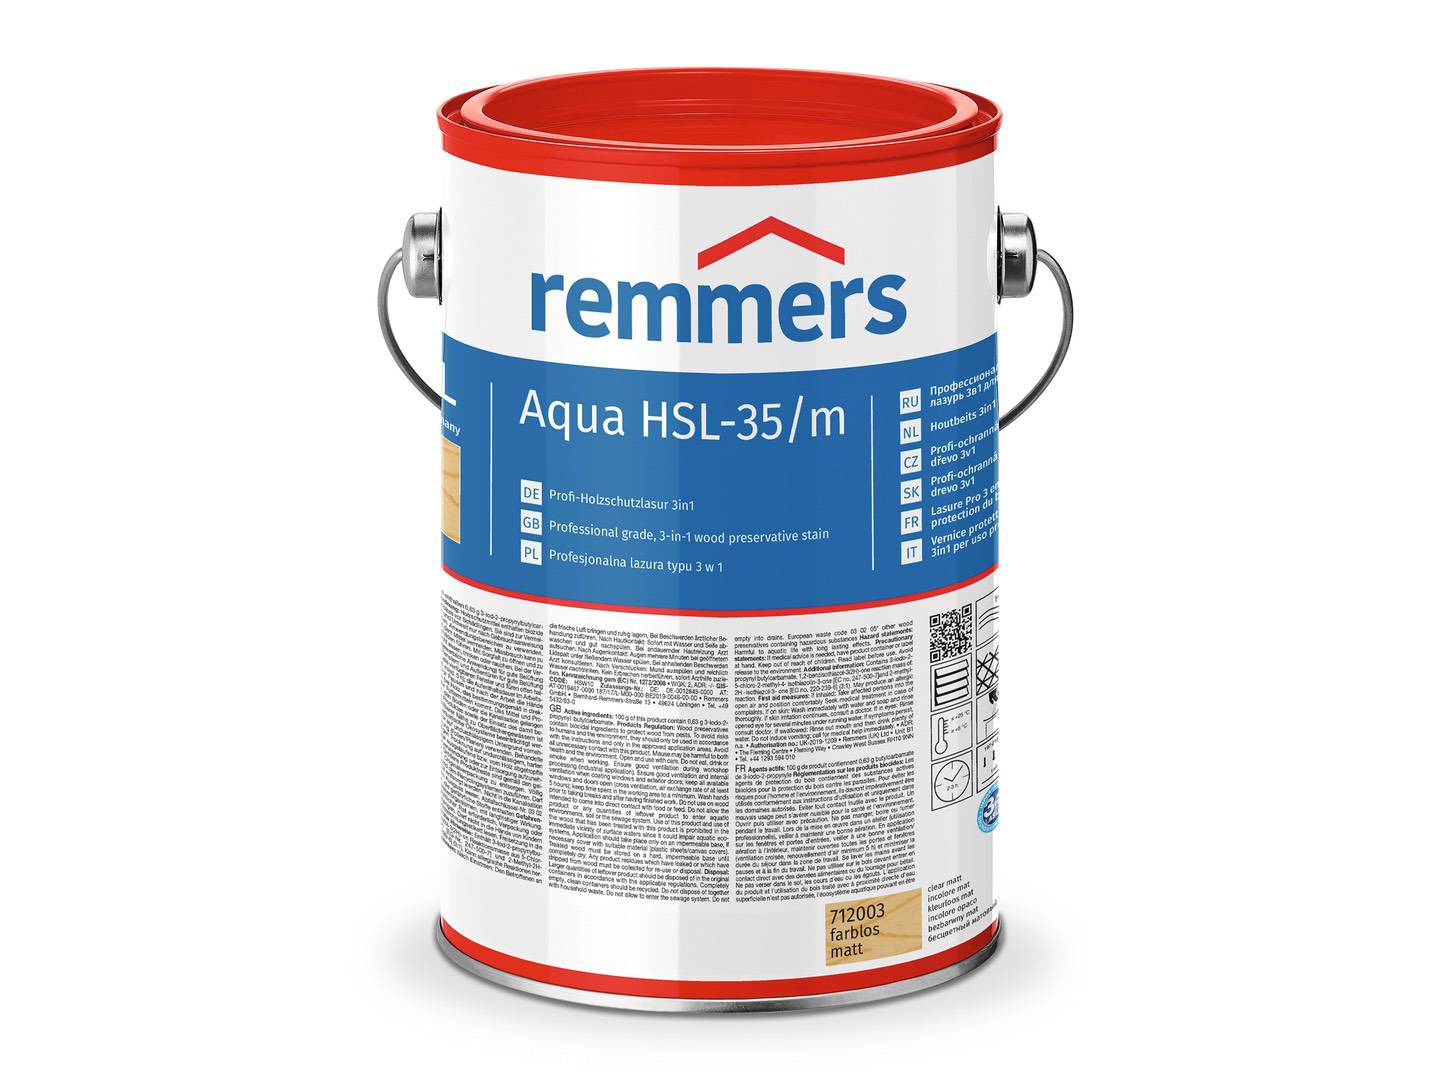 REMMERS Aqua HSL-35/m-Profi-Holzschutz-Lasur 3in1 nussbaum (RC-660) 2,50 l